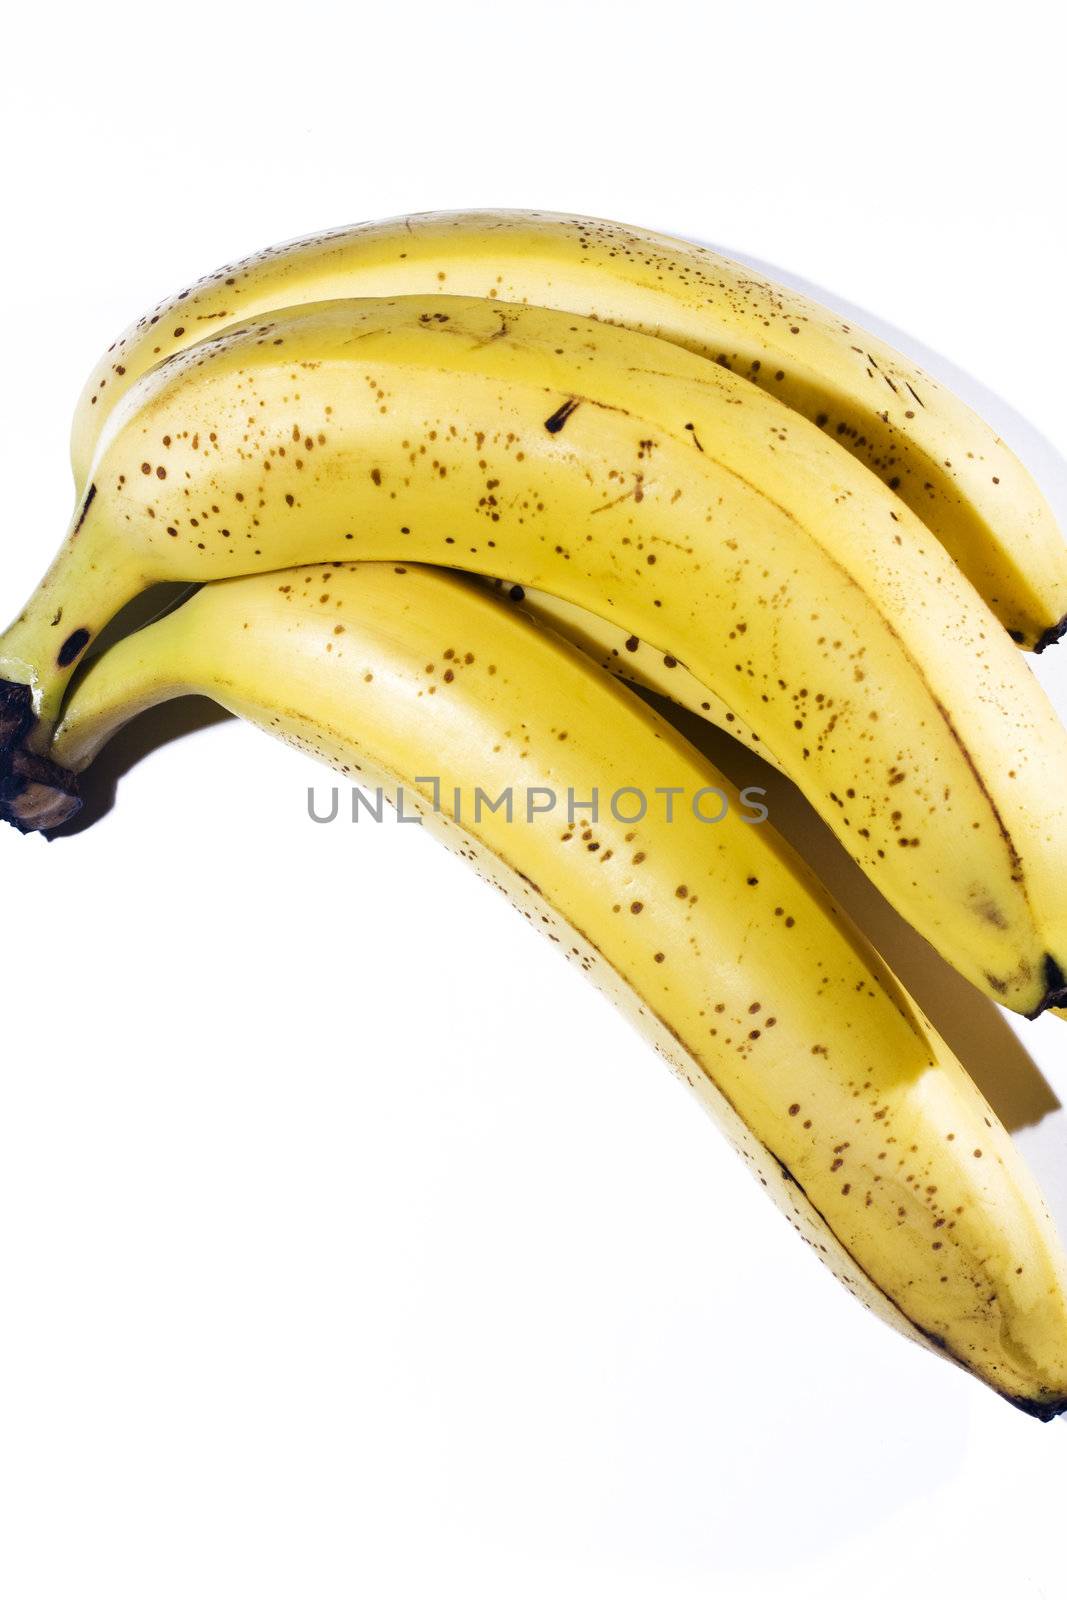 Ripe banana on background